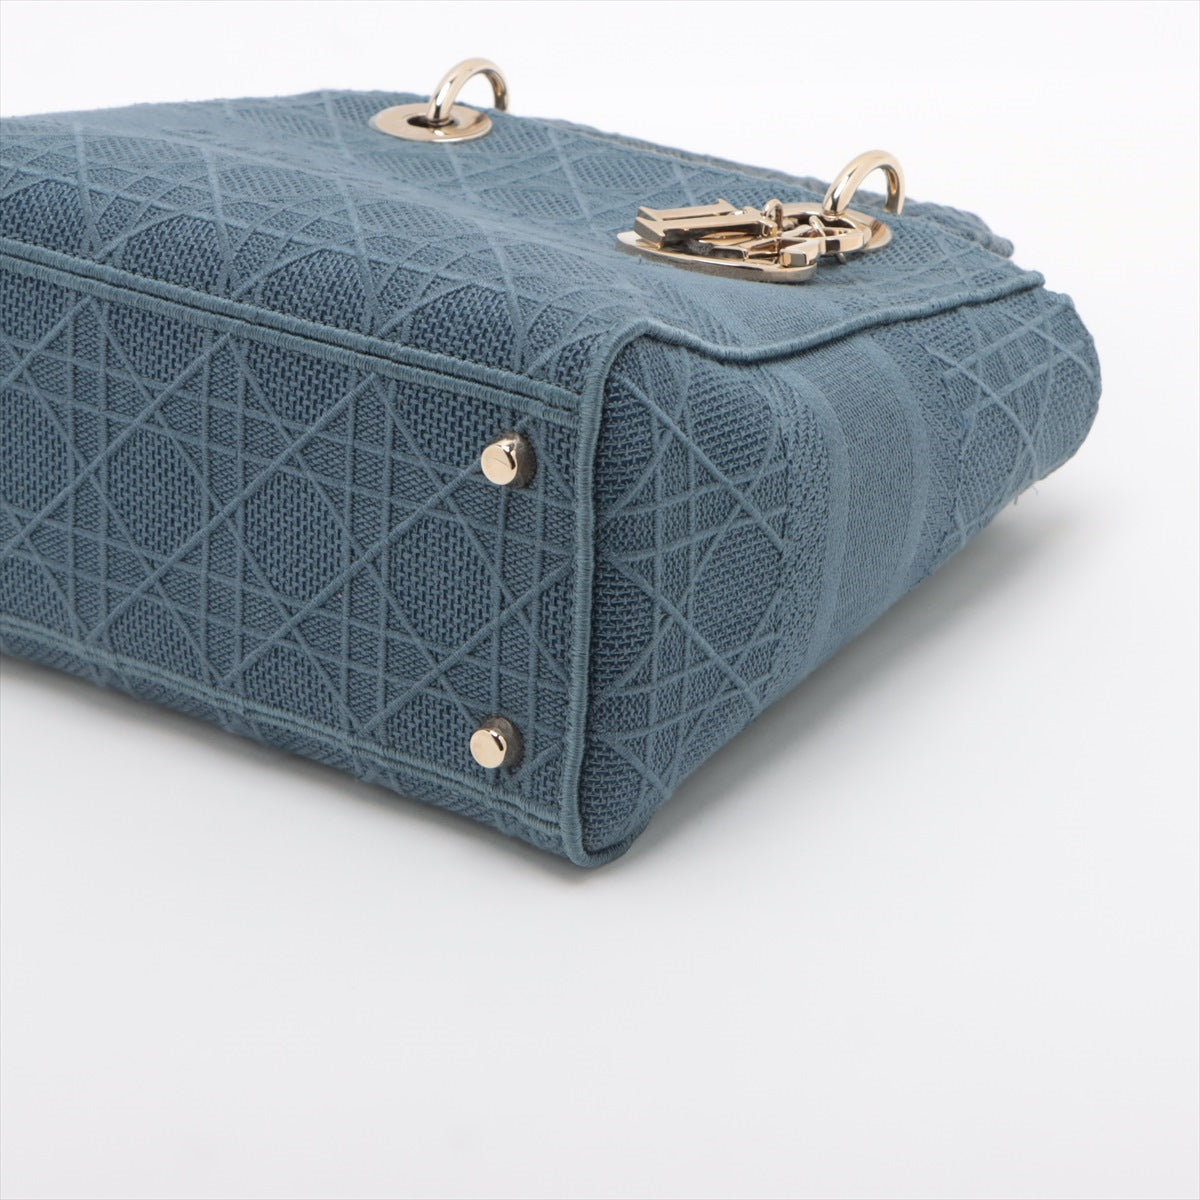 Christian Dior Lady Dior Cannage canvas 2way handbag Blue